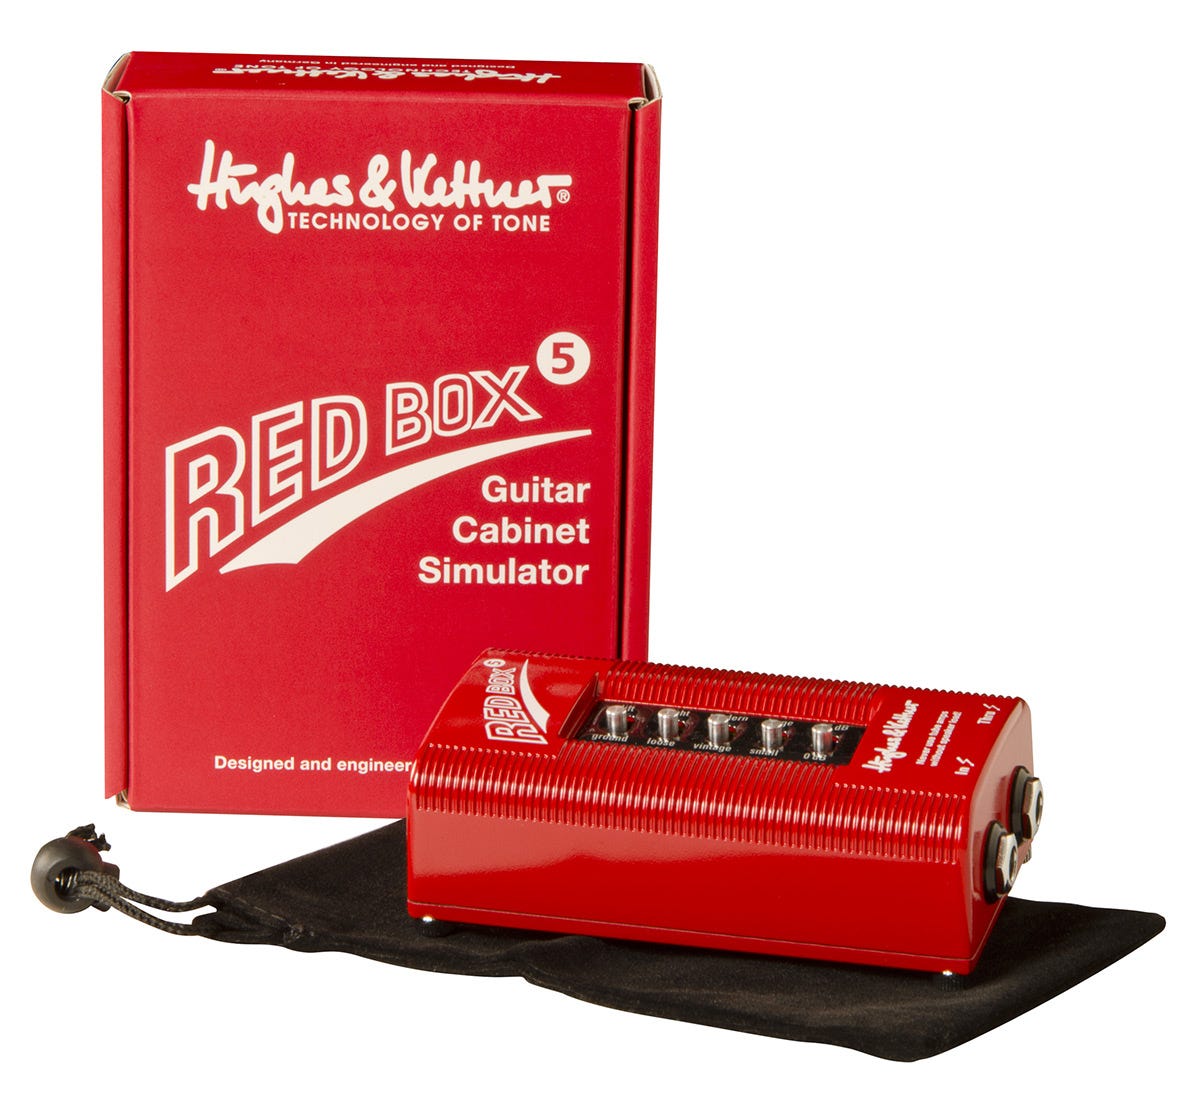 Hughes & Kettner RED BOX 5 Guitar Cabinet Emulator